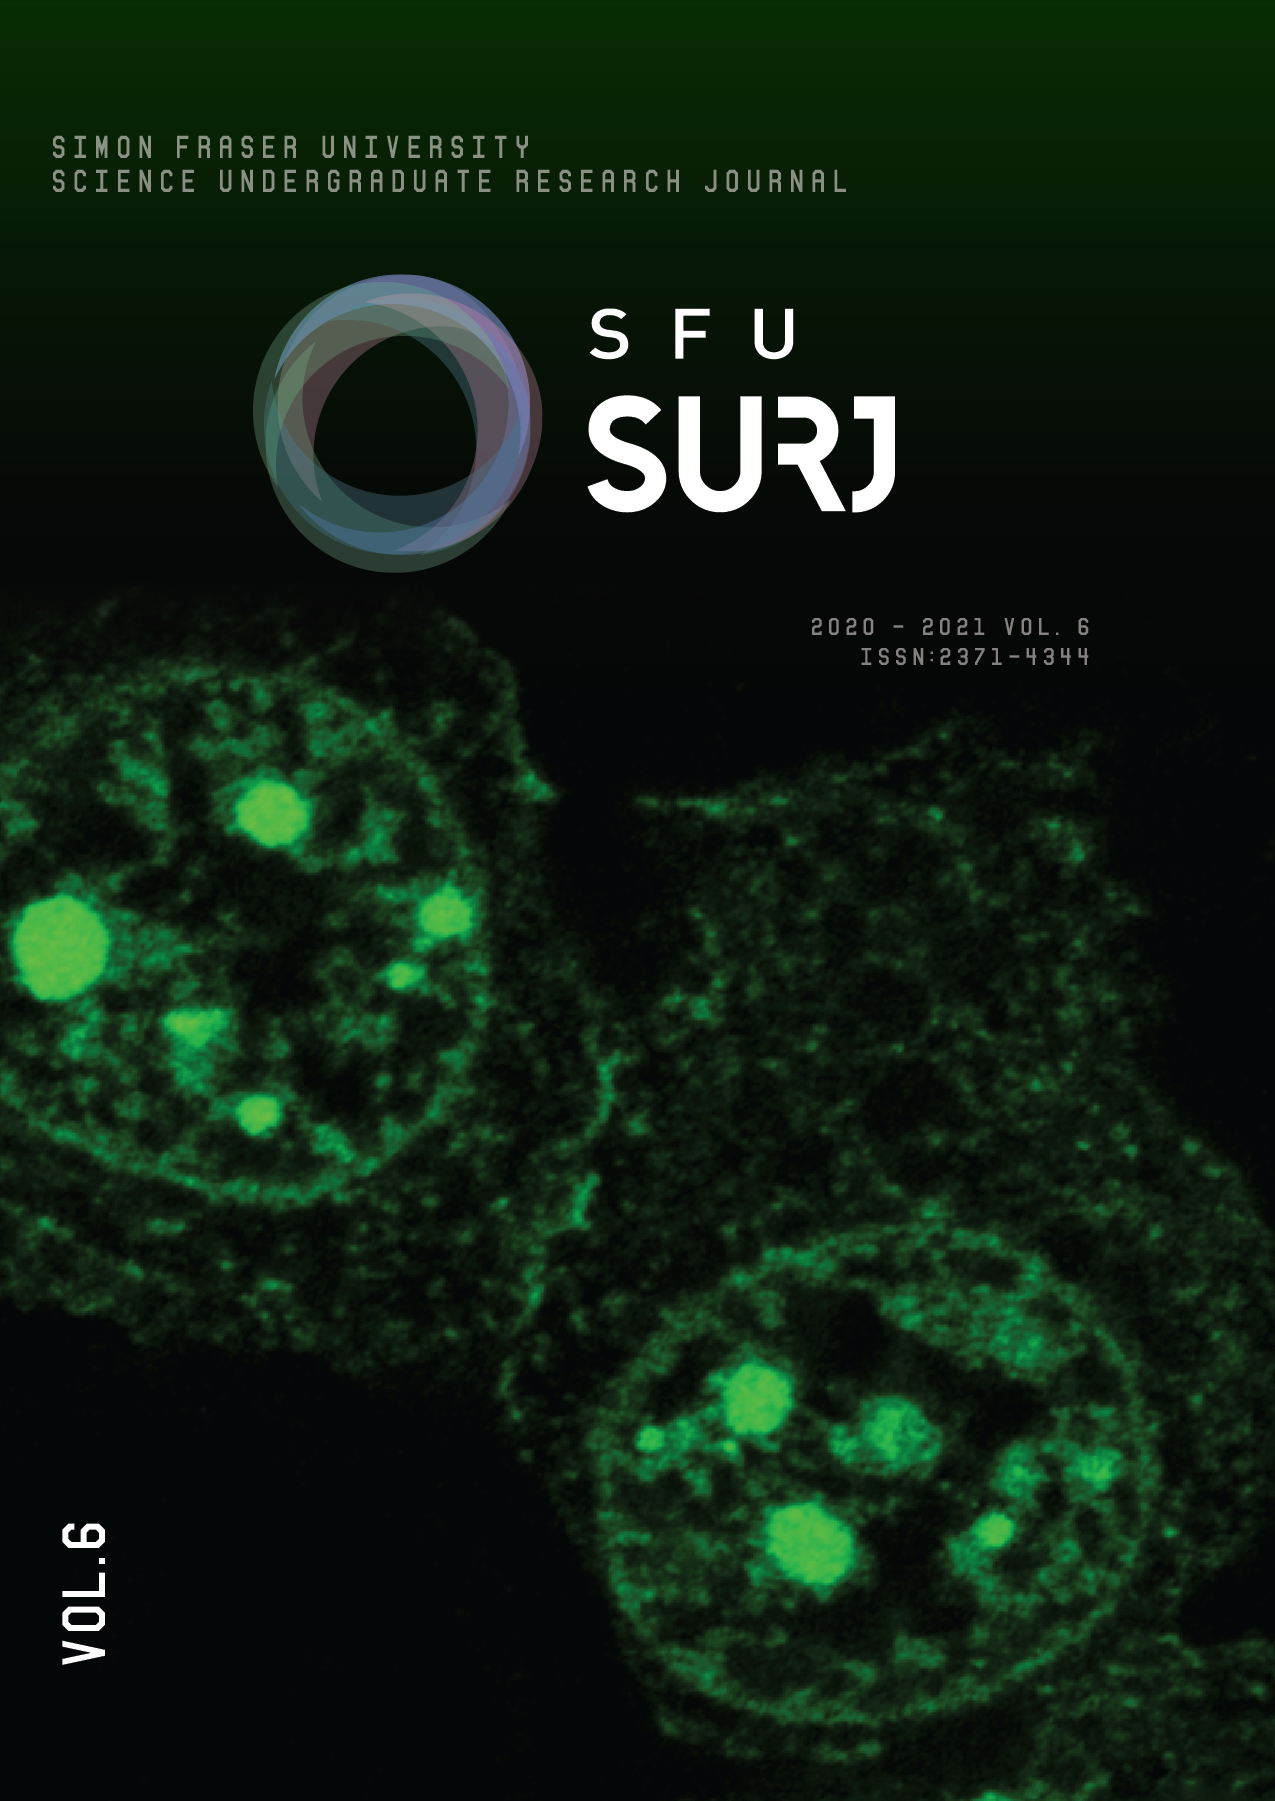 					View Vol. 6 (2021): SFU Science Undergraduate Research Journal
				